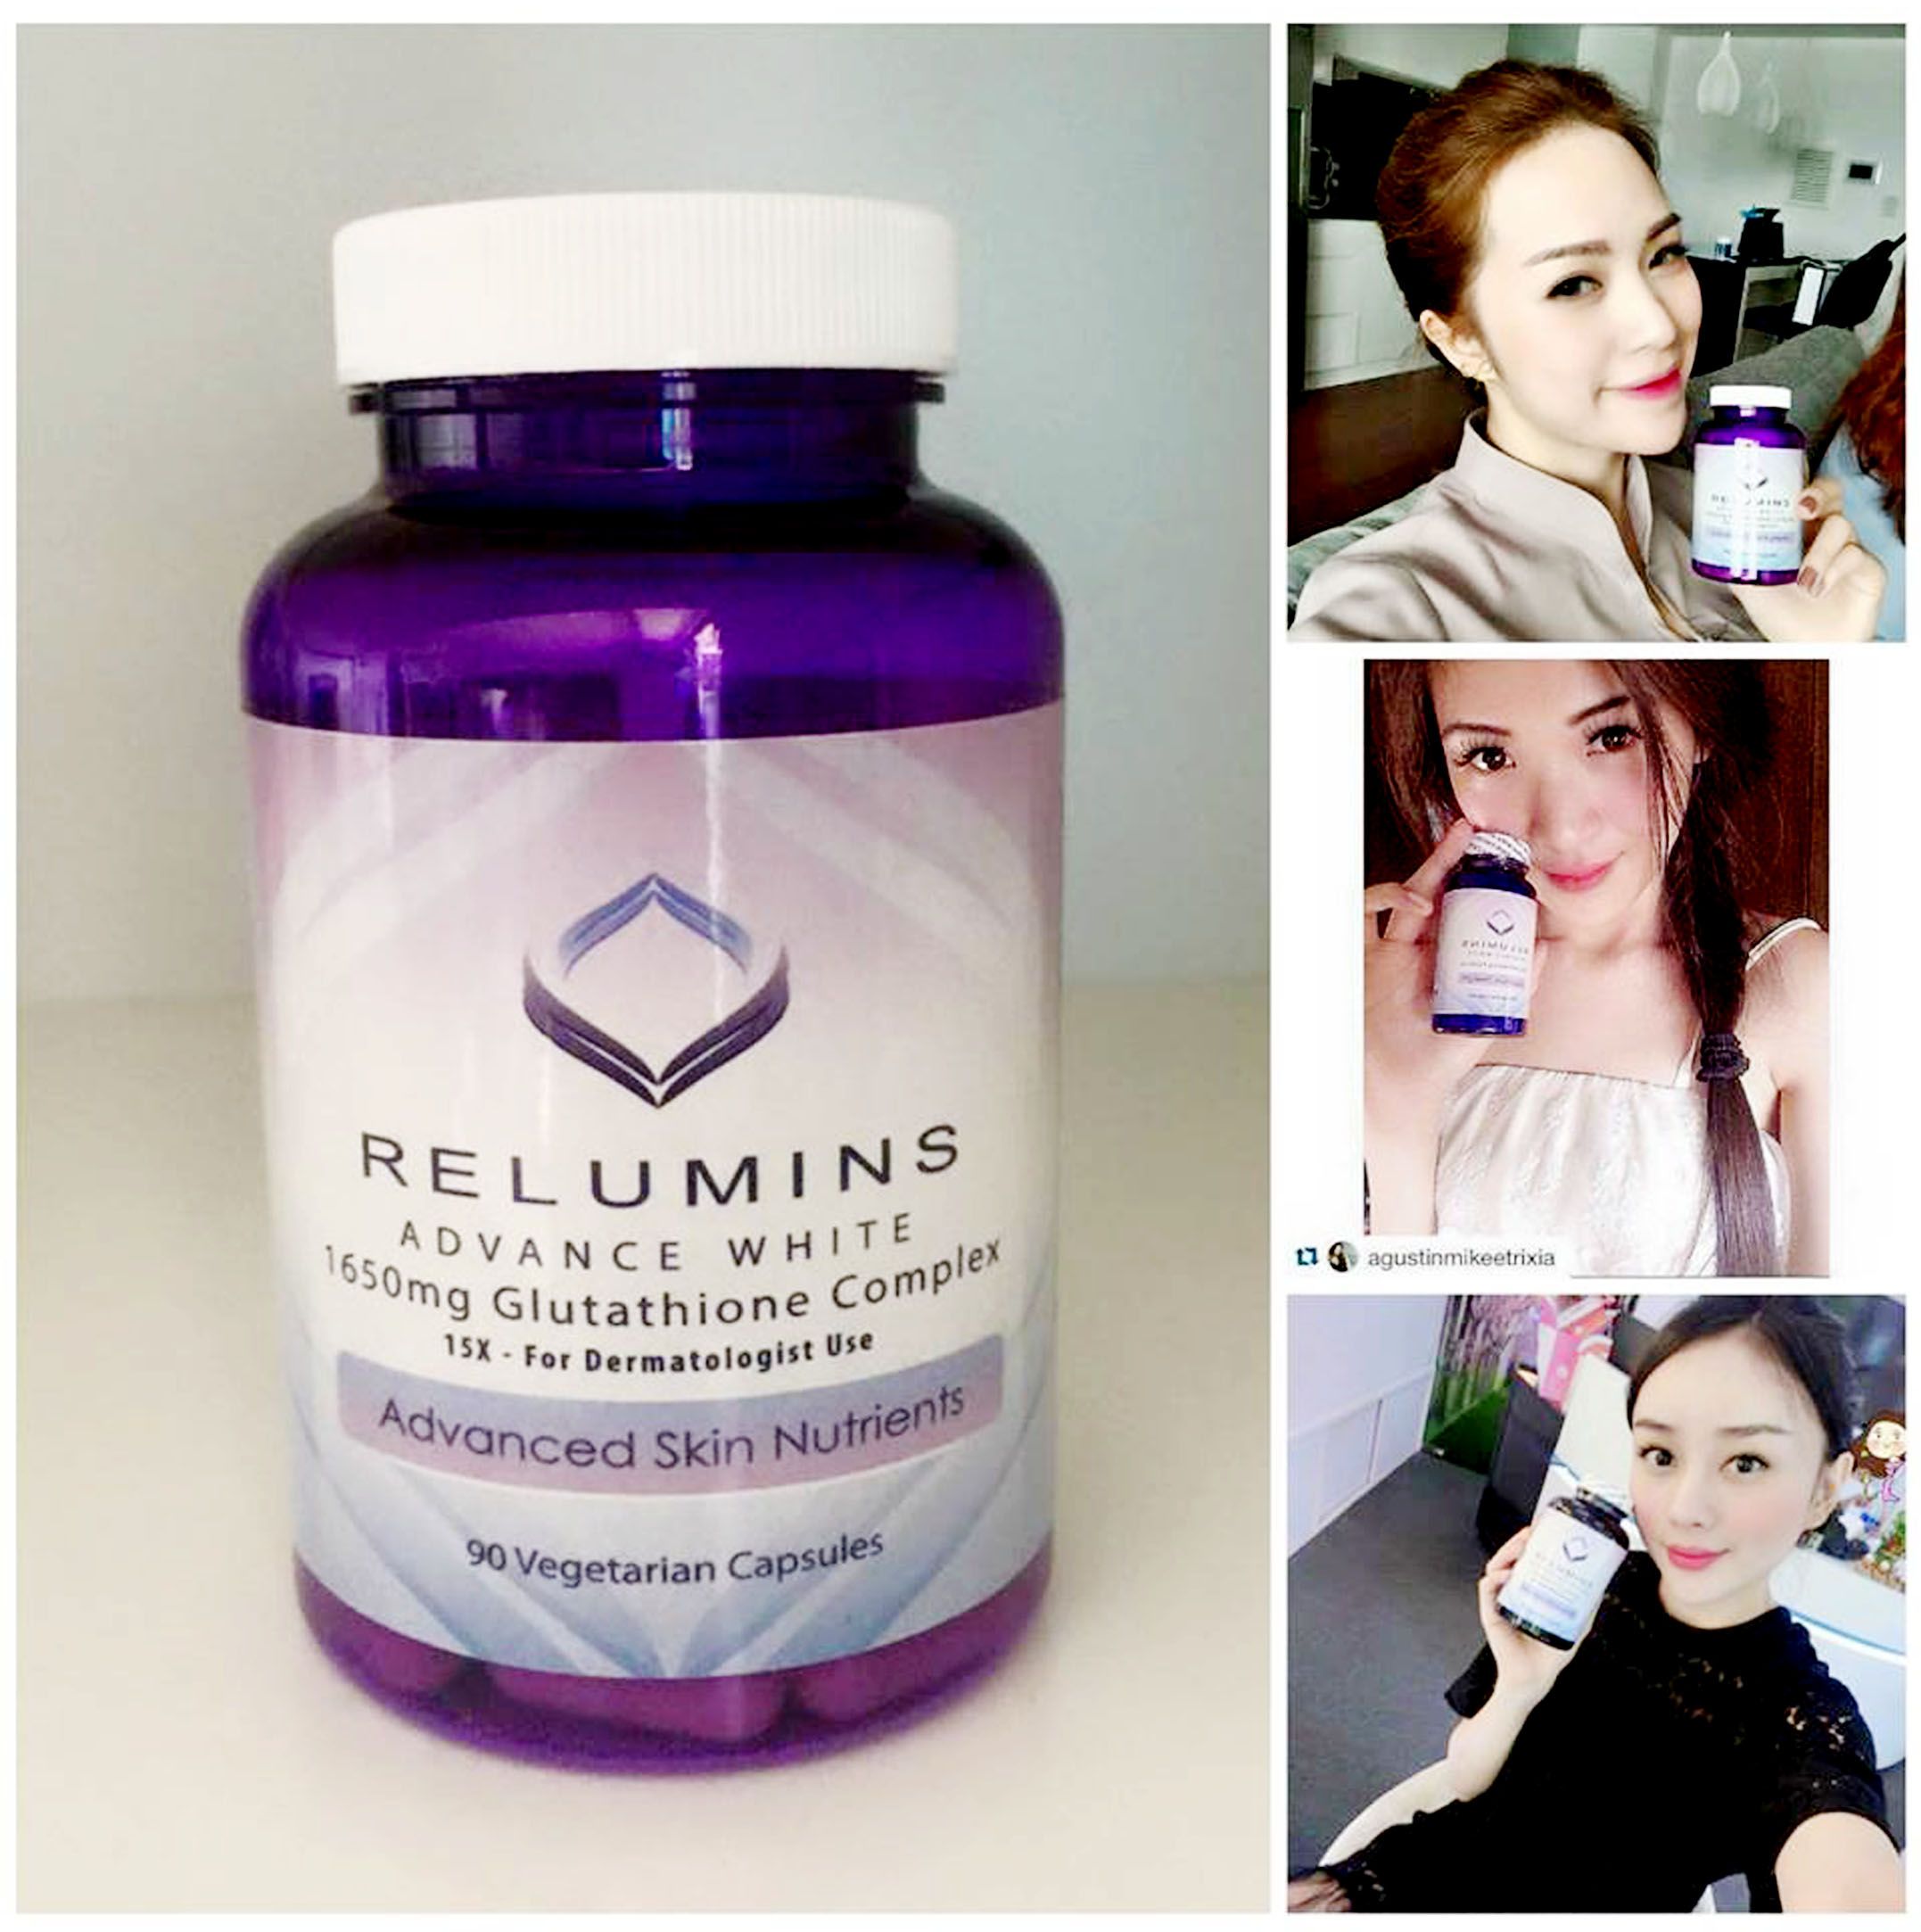 Relumins advance white bổ sung hàm lượng vitamin C đậm đặc nhằm nâng cao hiệu quả chống oxy hóa của Glutathione